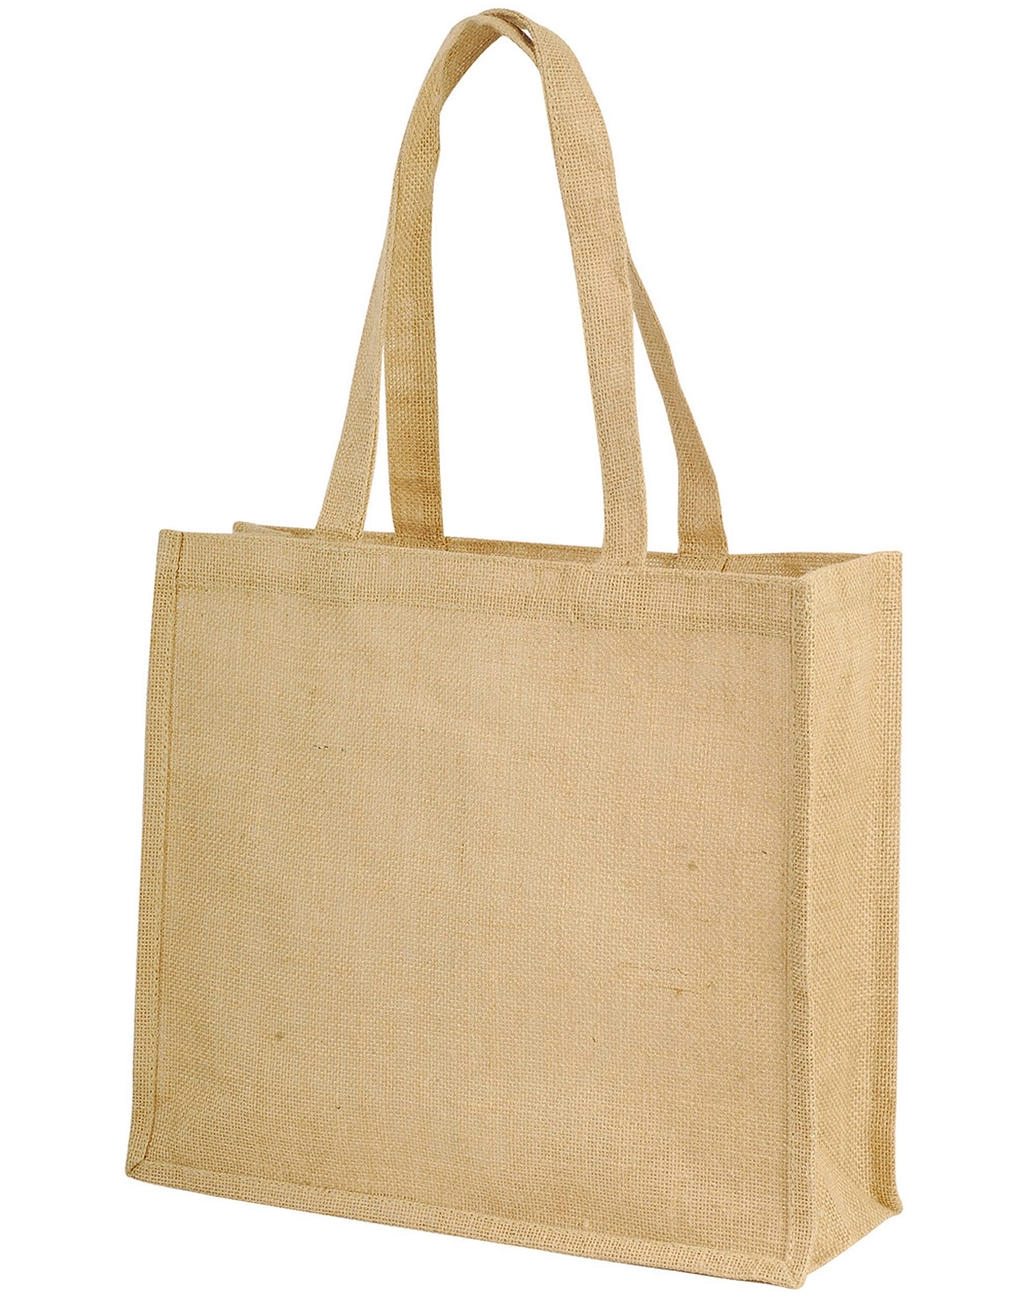 Calcutta Long Handled Jute Shopper Bag zum Besticken und Bedrucken mit Ihren Logo, Schriftzug oder Motiv.